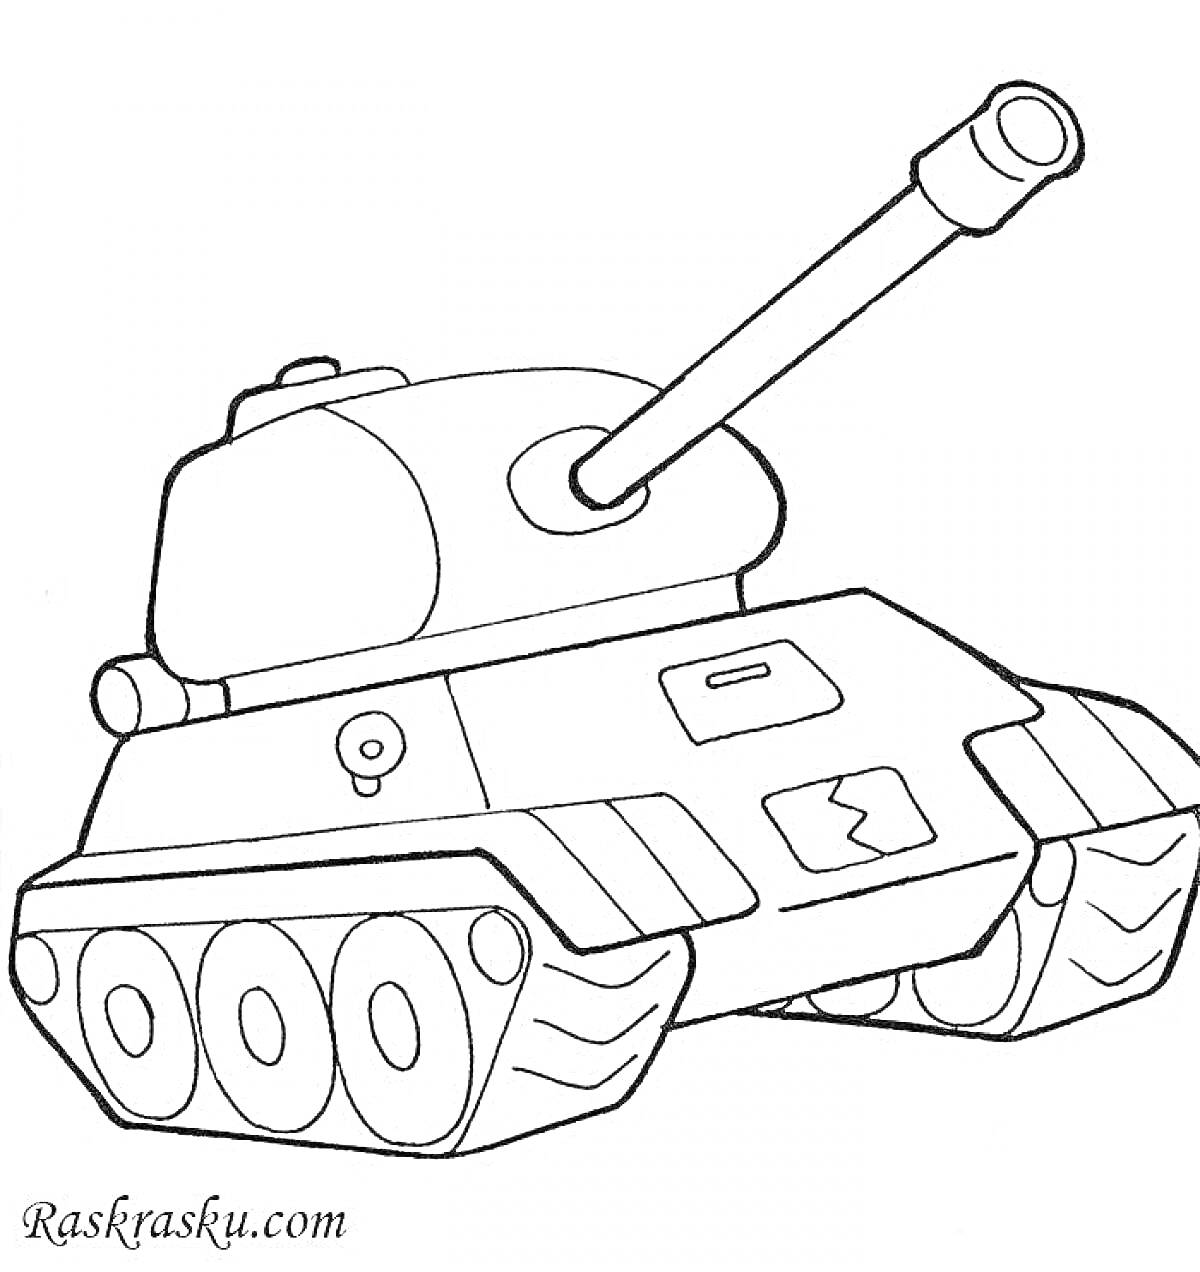 Раскраска танк для малышей с гусеницами, пушкой и звёздочками